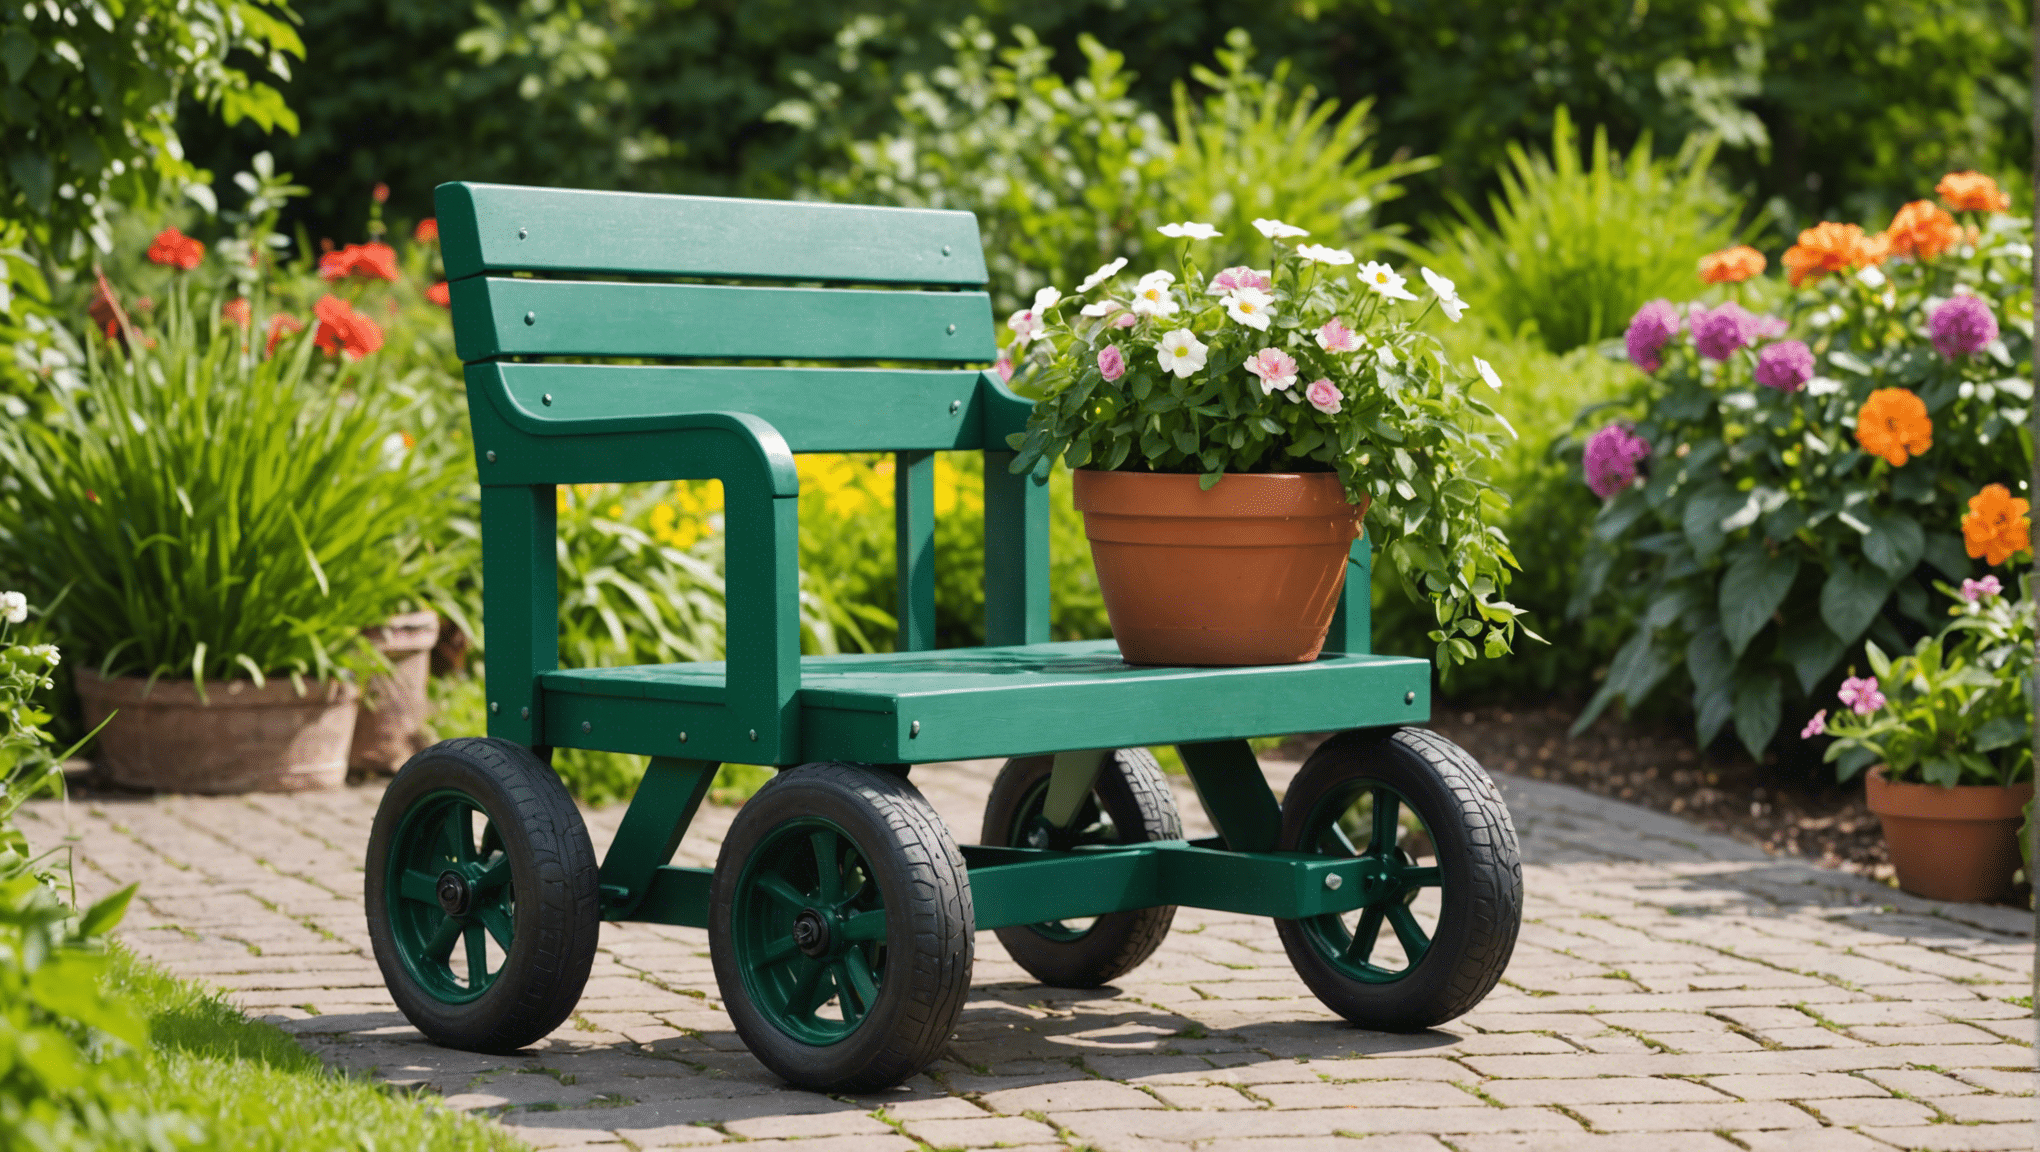 objevte výhody investice do zahradního sedátka s kolečky a proměňte své zahradnické zážitky. zjistěte, jak může tento všestranný nástroj zvýšit váš komfort a produktivitu na zahradě.